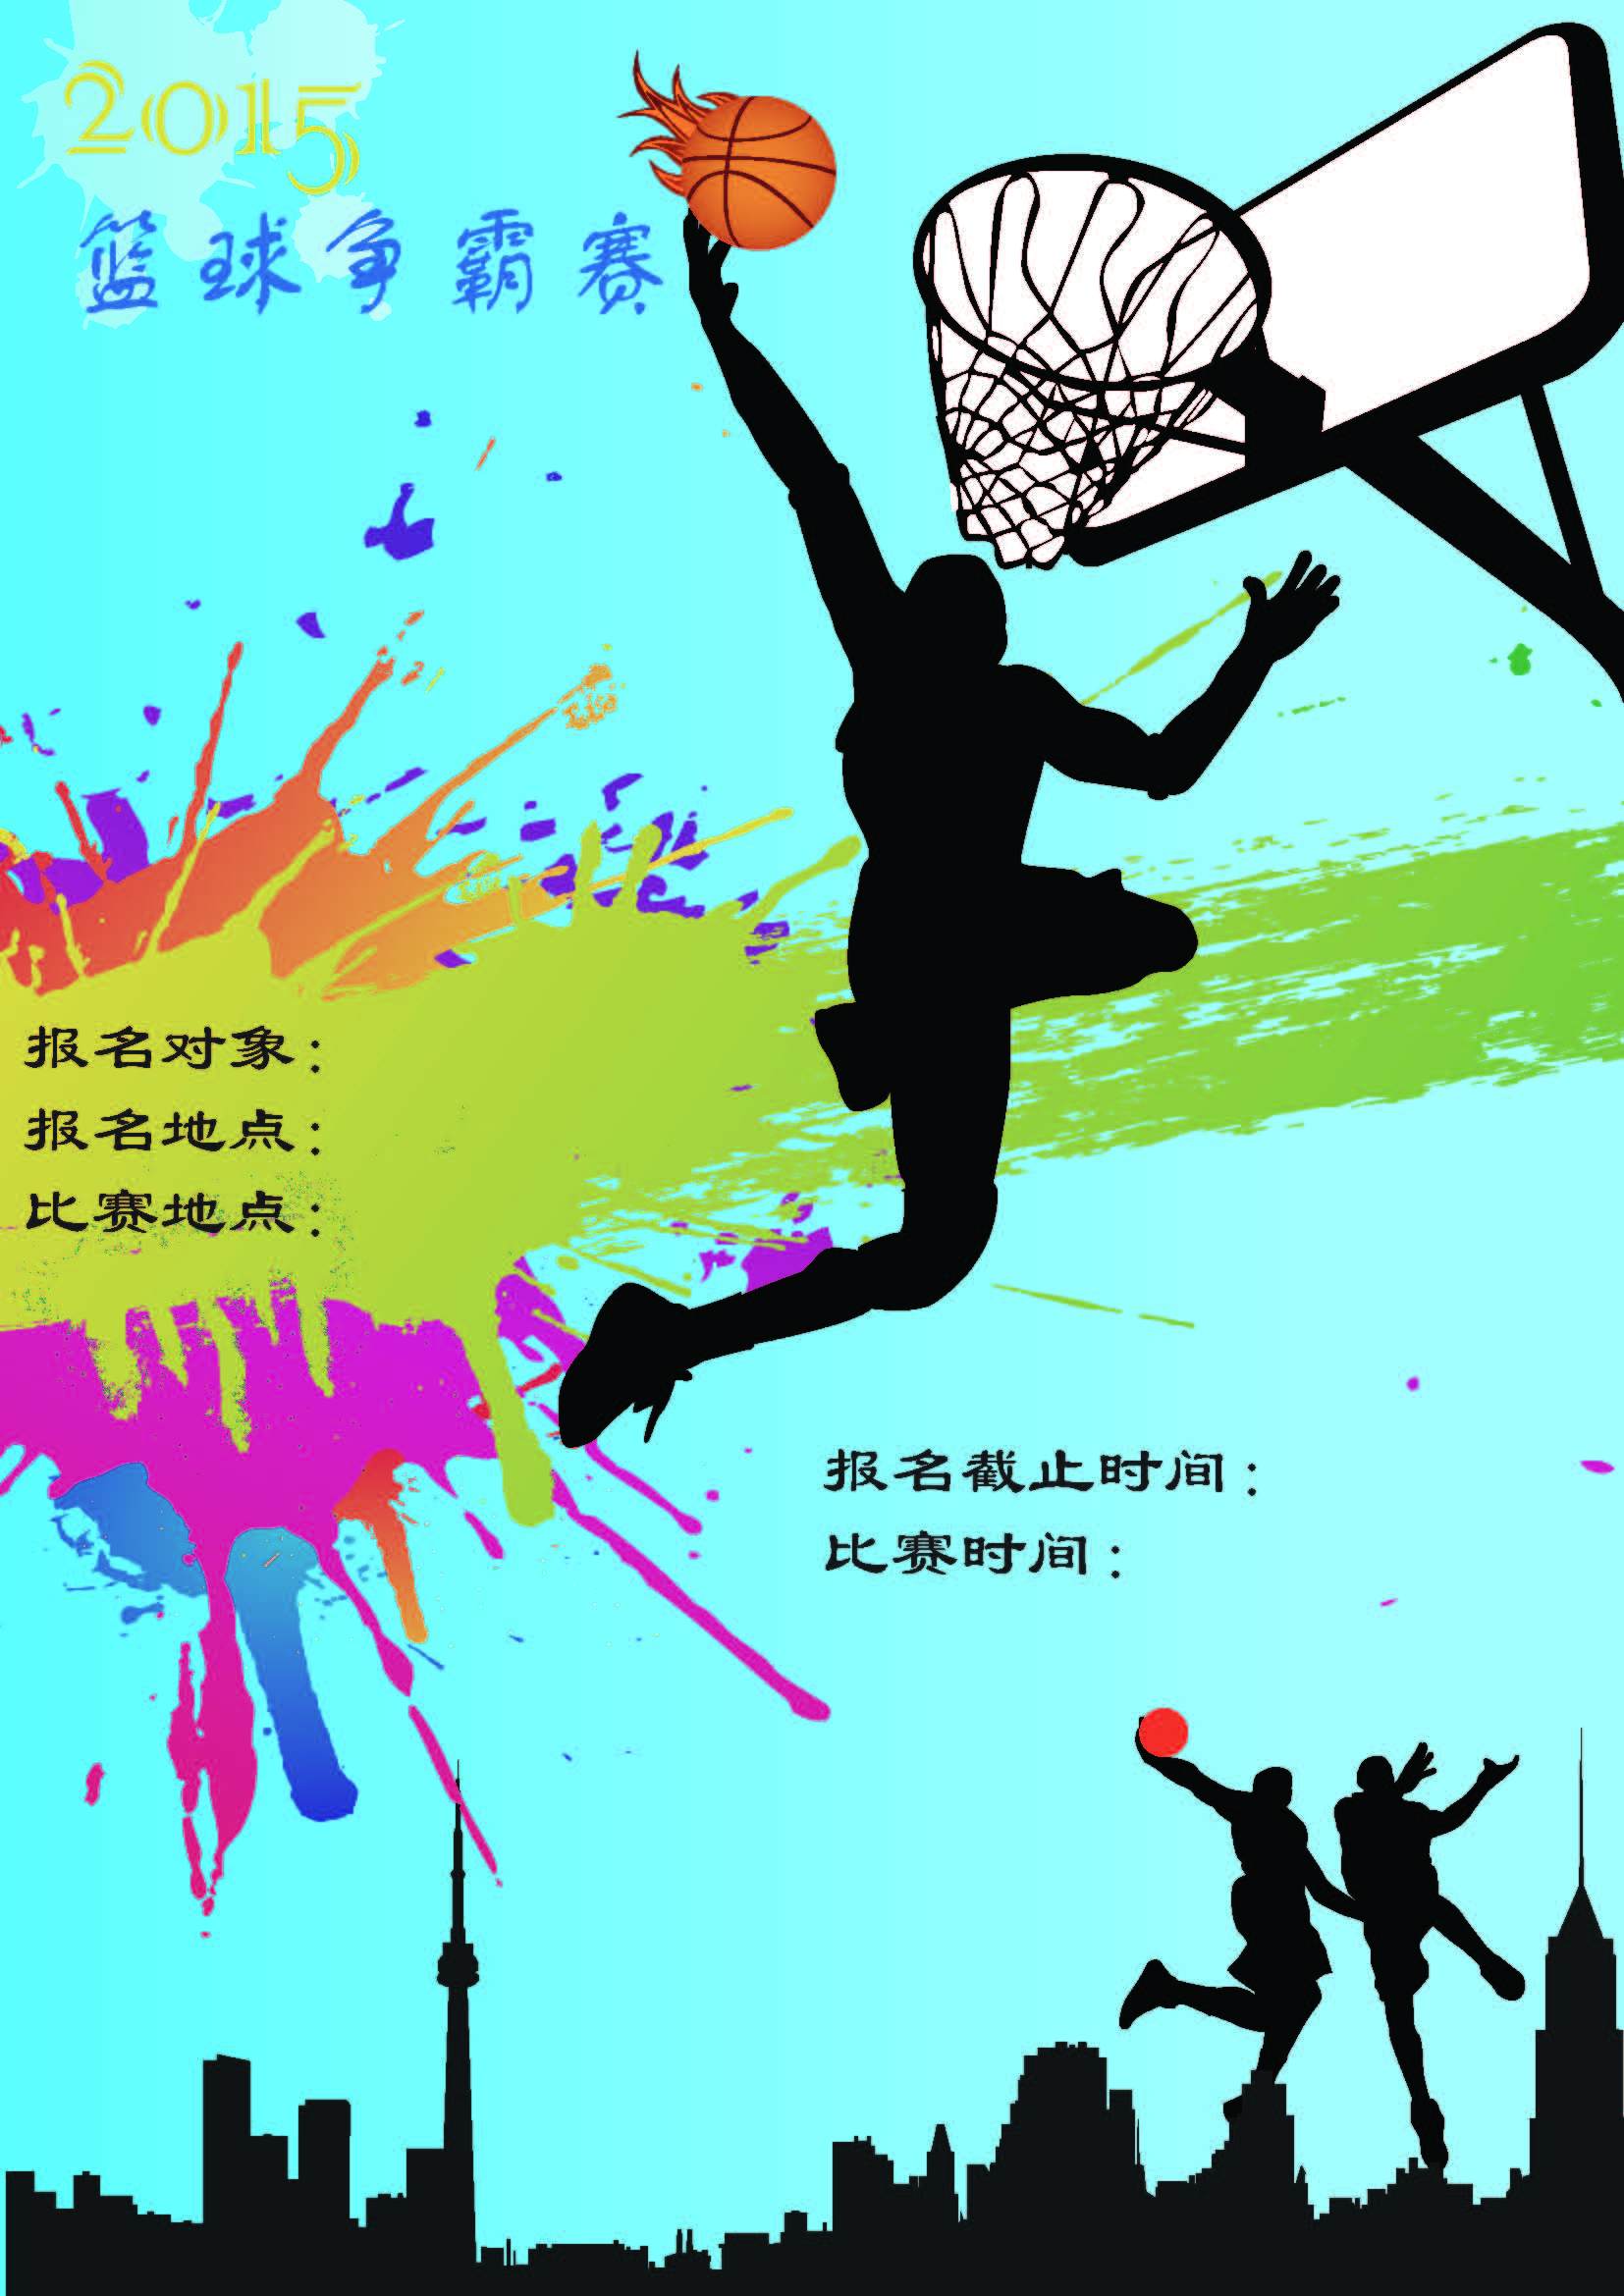 炫酷酷炫风篮球对抗赛宣传海报设计图片下载 - 觅知网